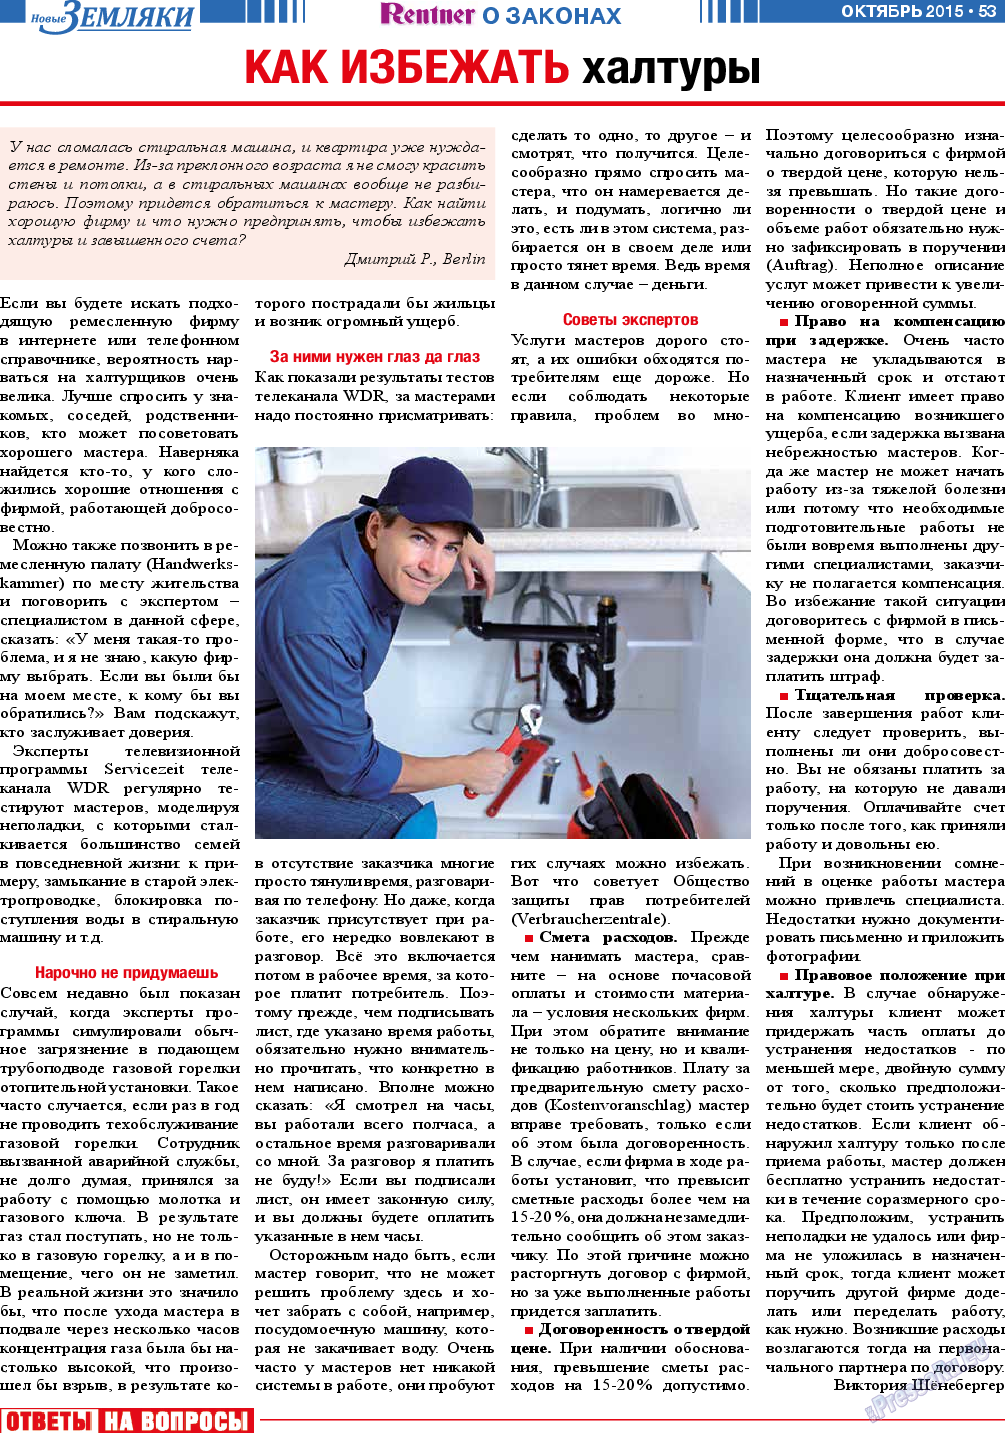 Новые Земляки (газета). 2015 год, номер 10, стр. 53